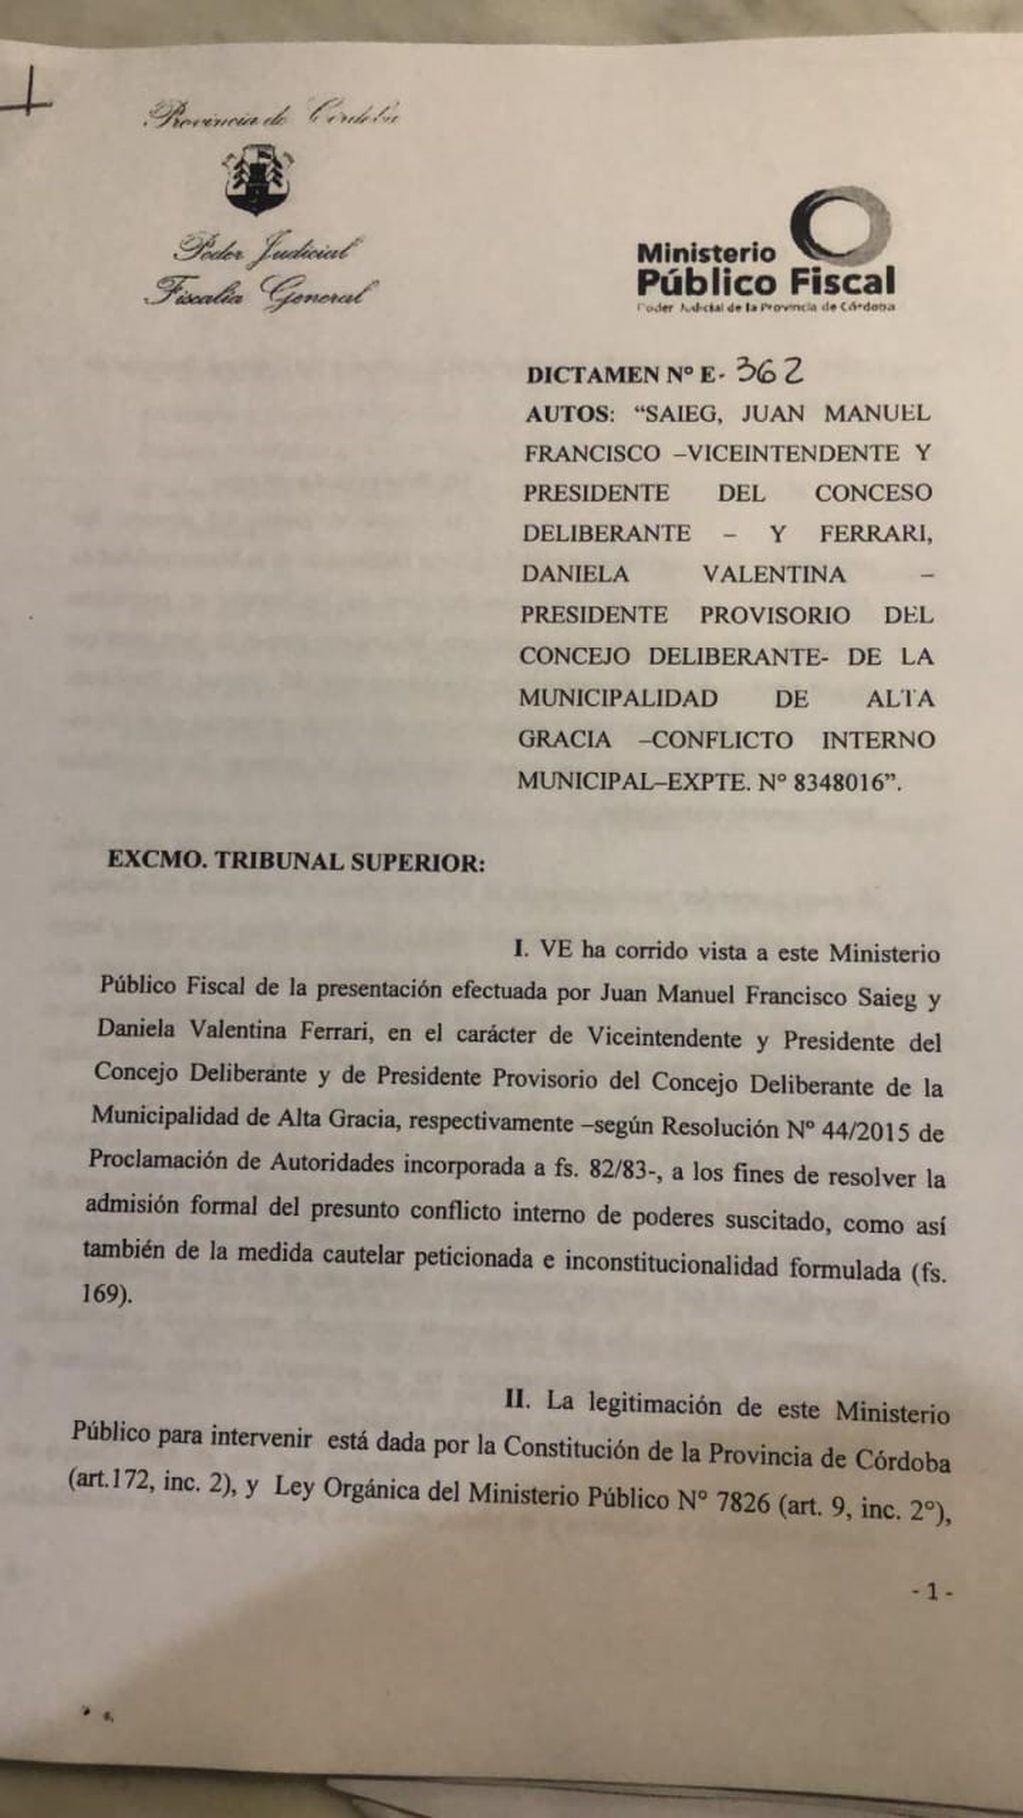 Resolución del Tribunal Superior de Justicia ante la presentación judicial de "Conflicto de poderes" dentro del Concejo Deliberante de Alta Gracia.